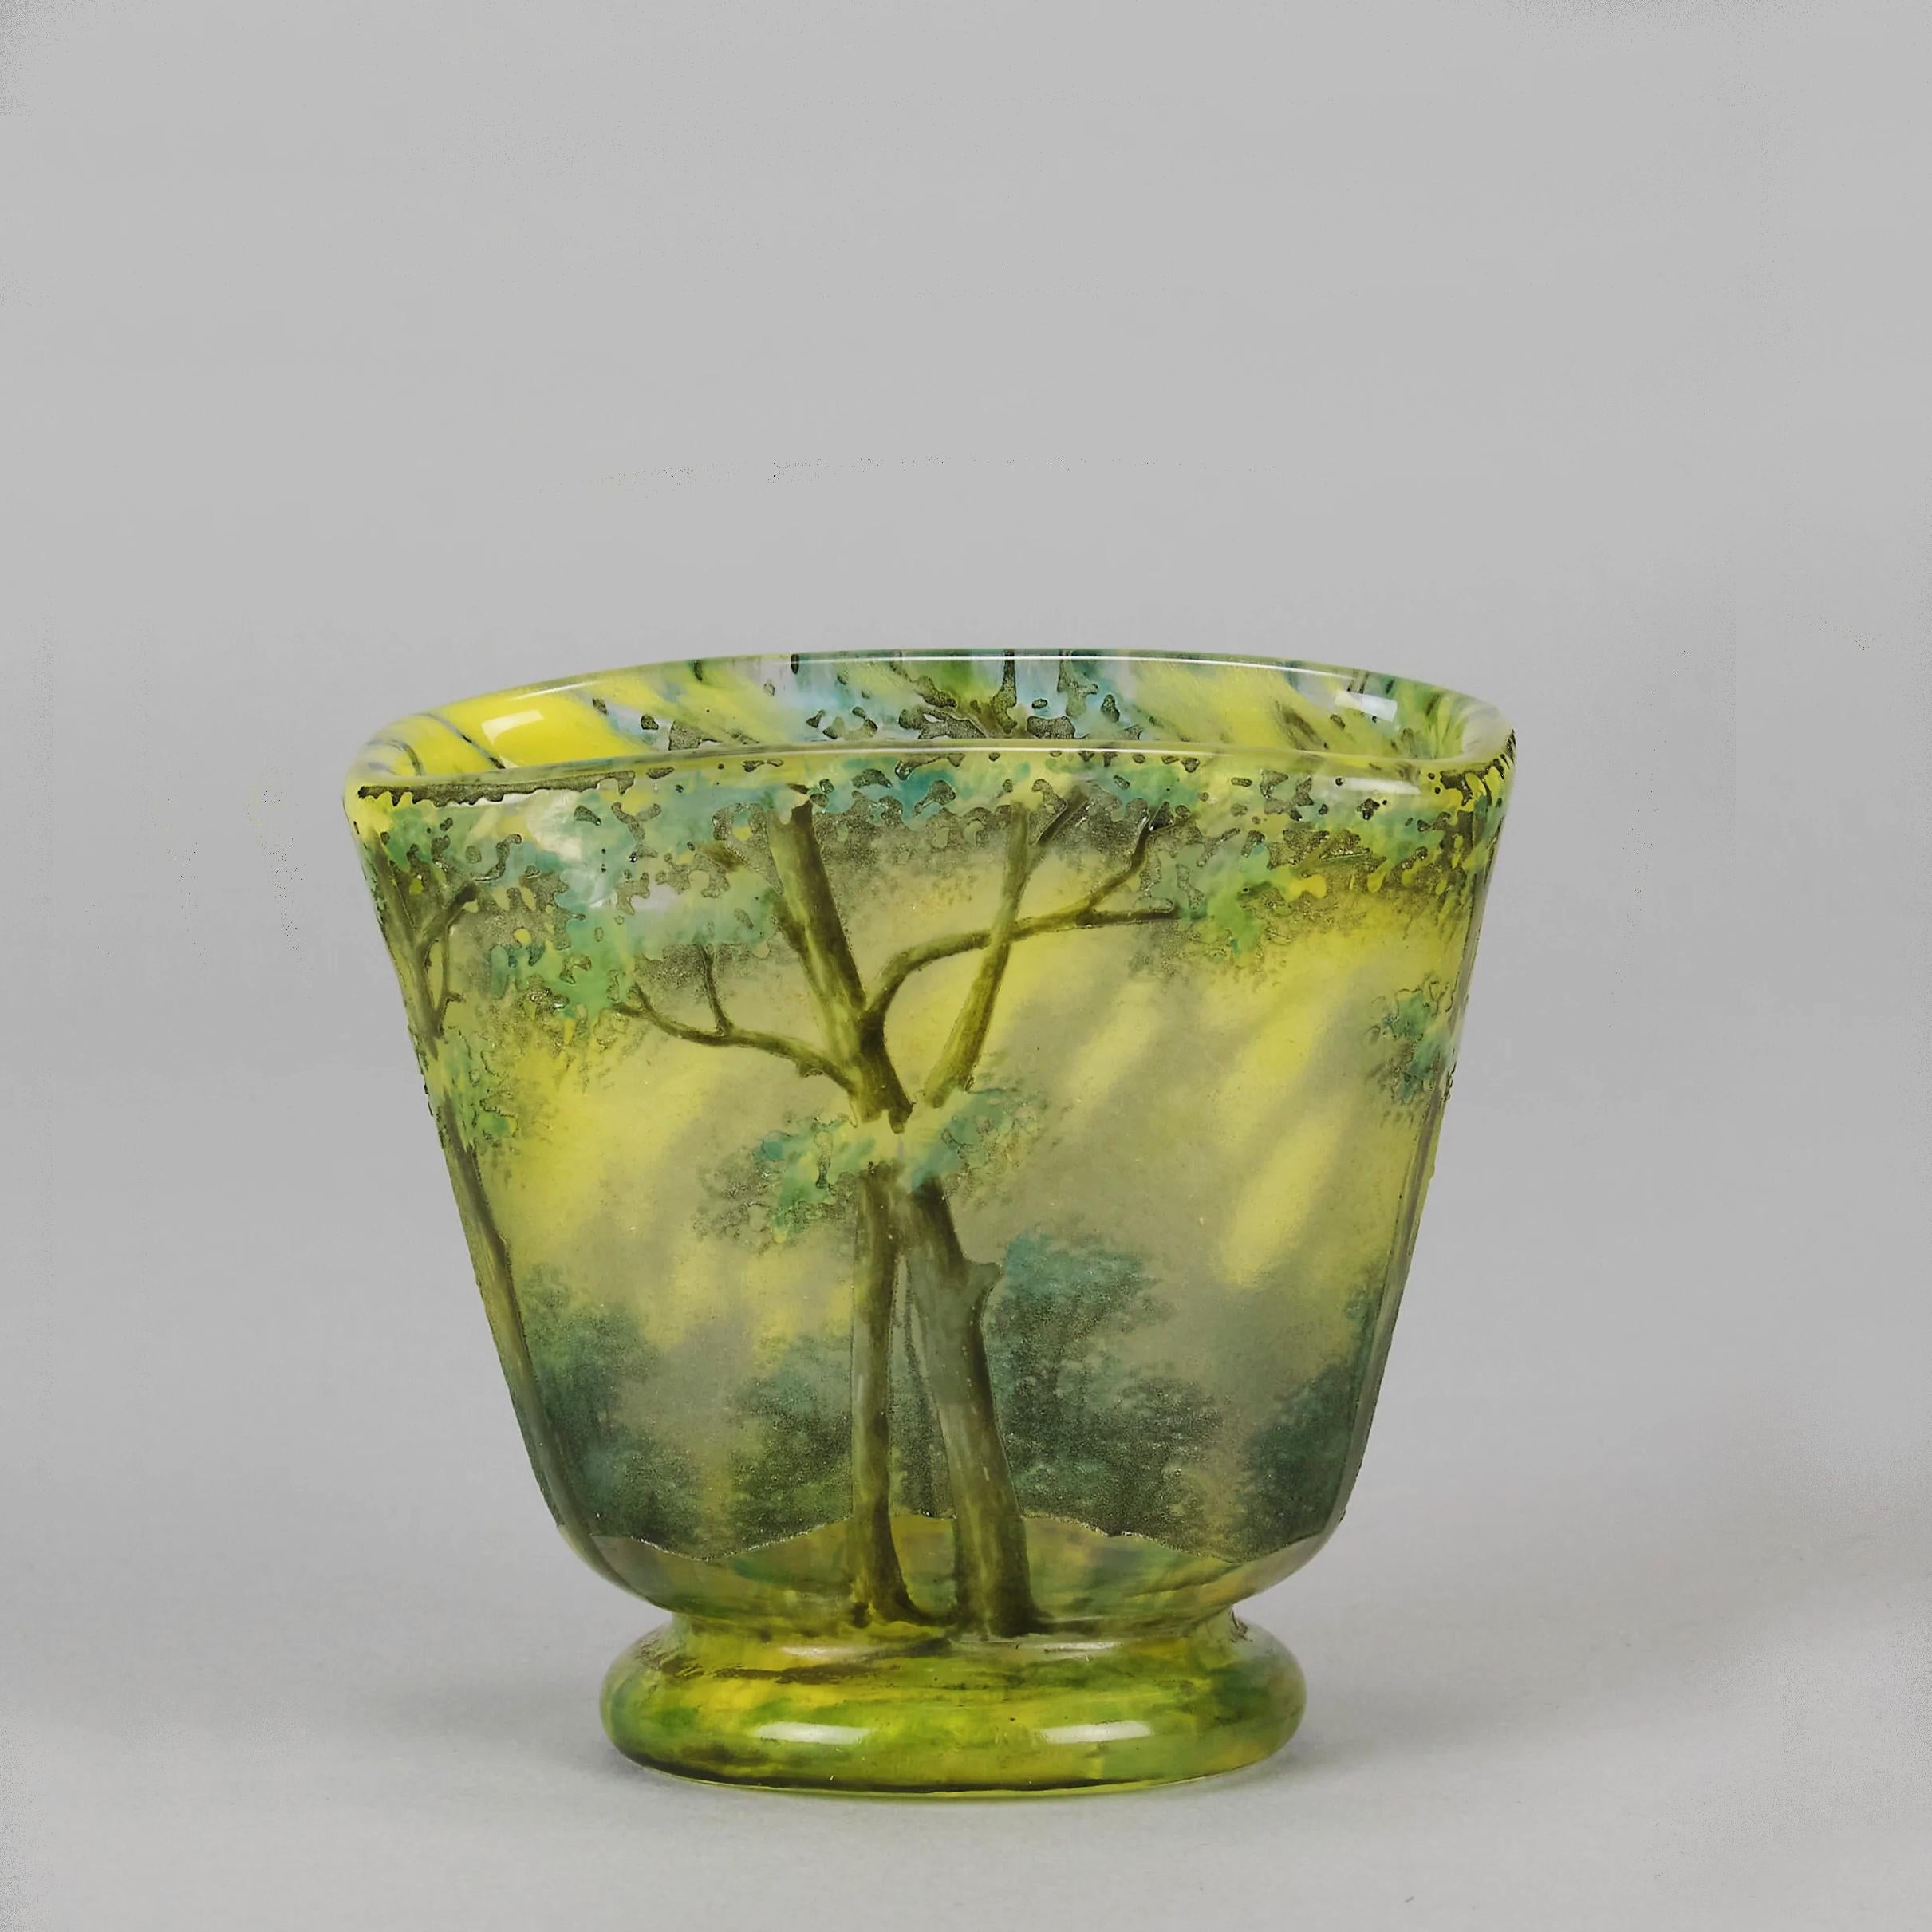 Eine schöne Kamee-Glasvase aus dem frühen 20. Jahrhundert, geätzt und emailliert mit einer lebendigen Frühlingswaldlandschaft, mit sehr feinen, handgearbeiteten Oberflächendetails und einer schönen, tiefen, einladenden Farbe, signiert auf dem Sockel